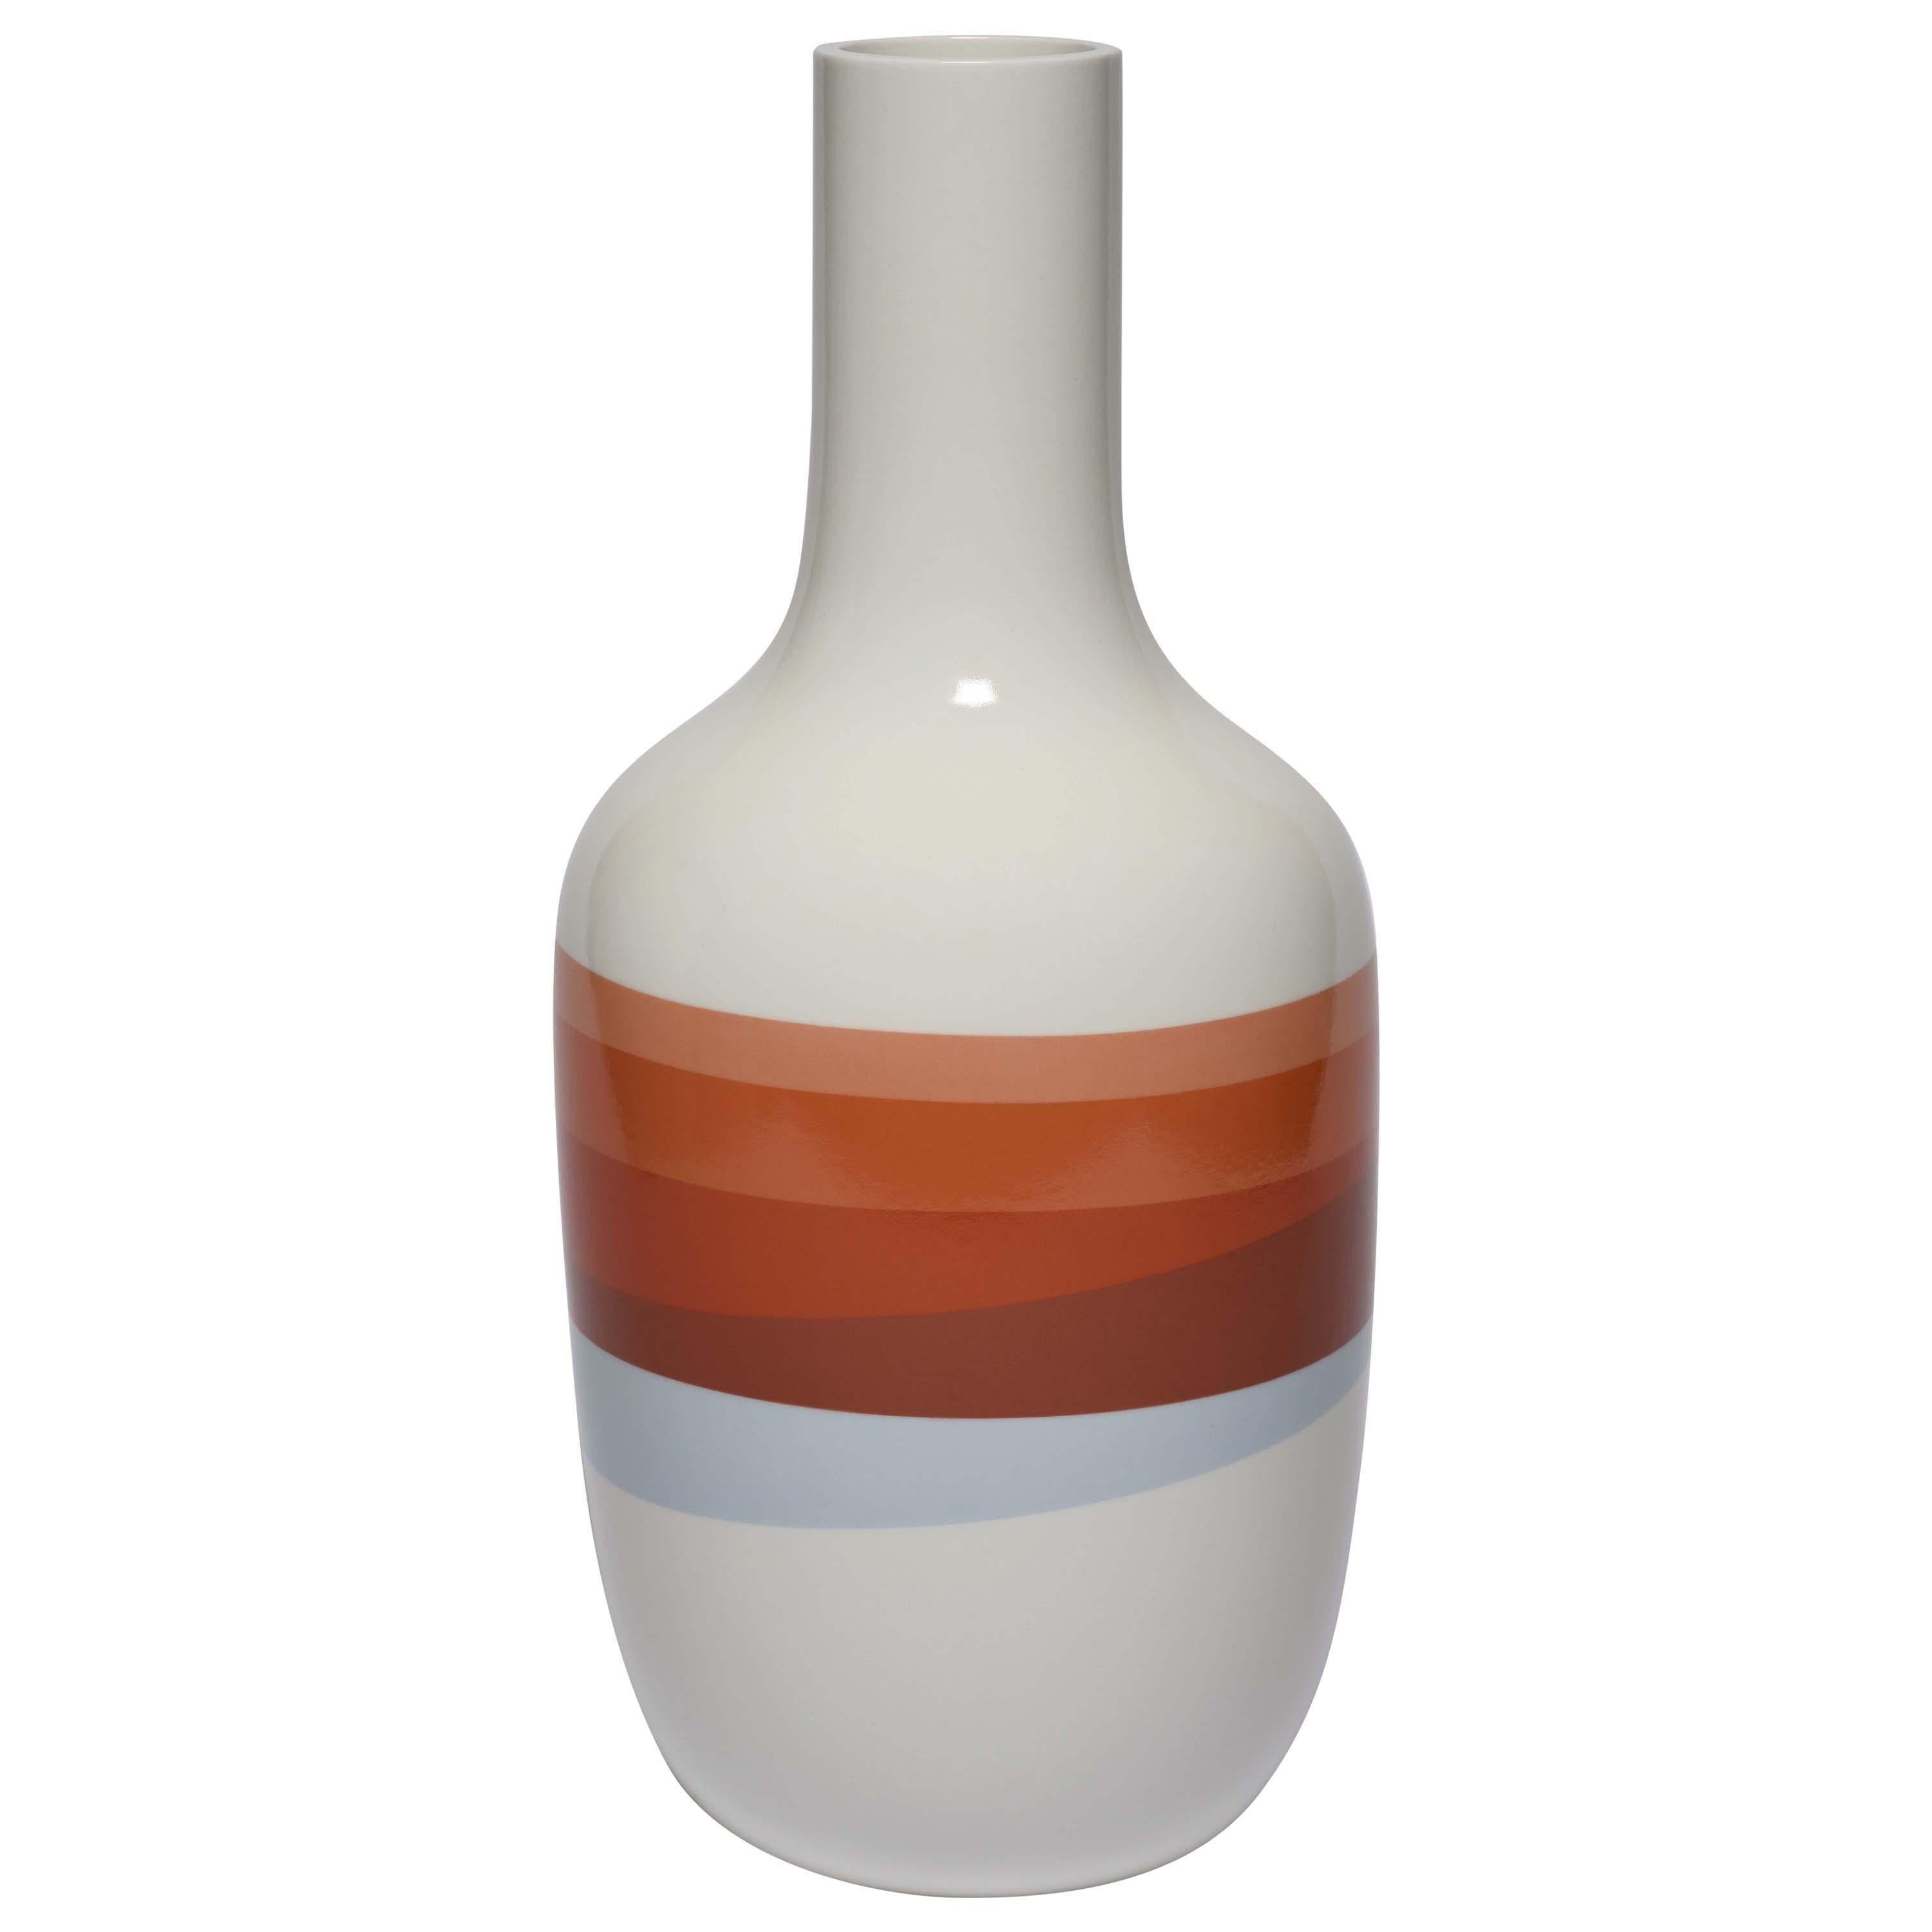 Scholten & Baijings 2.5 Vase in Porcelain by Manufacture Nationale de Sèvres